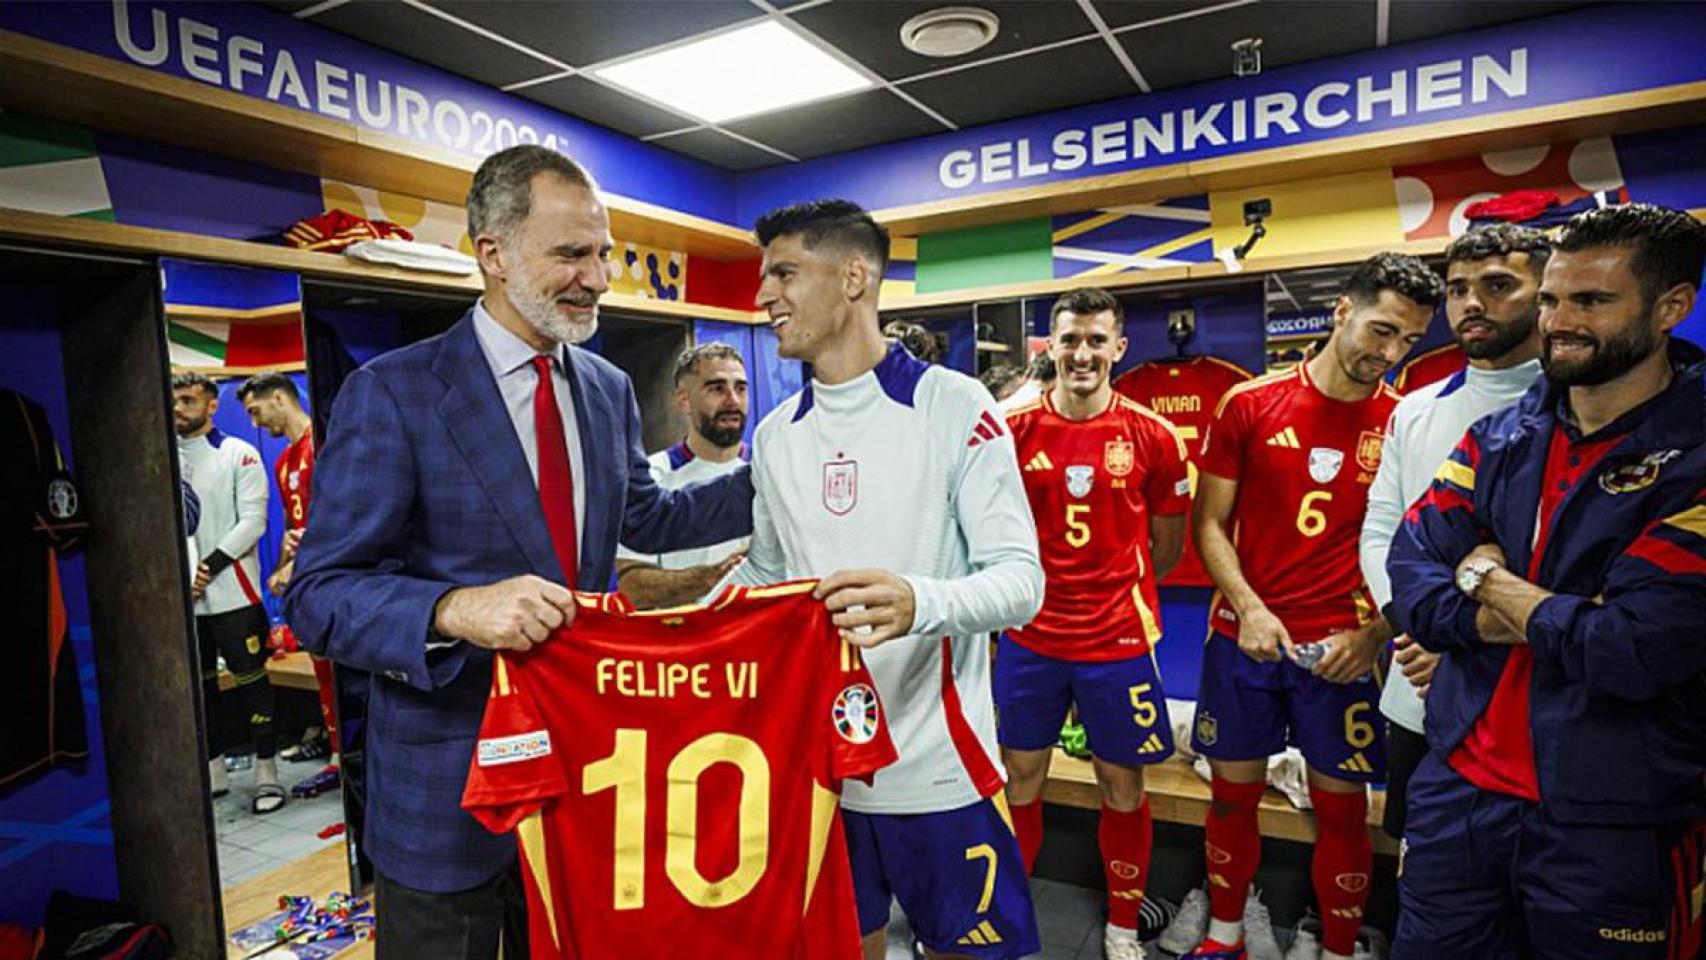 El Rey Felipe VI recibe una camiseta con su nombre tras felicitar a los jugadores de España por el triunfo ante Italia.